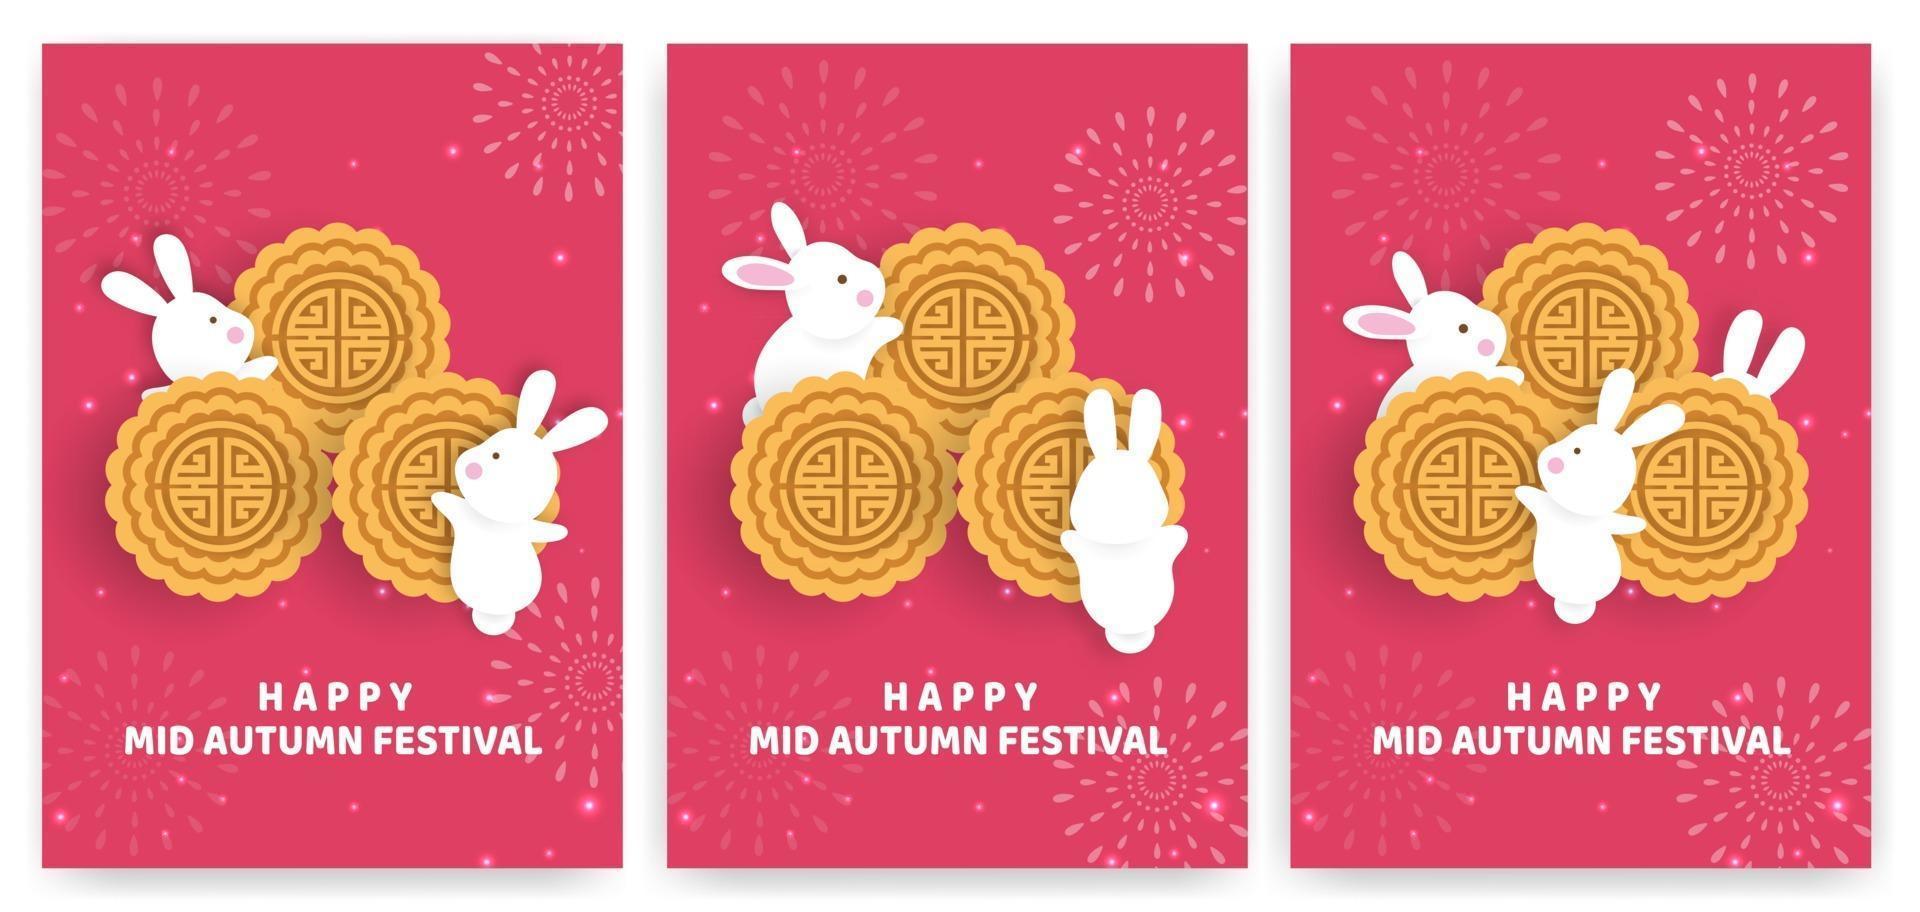 banner y tarjeta del festival del medio otoño en estilo papercut vector